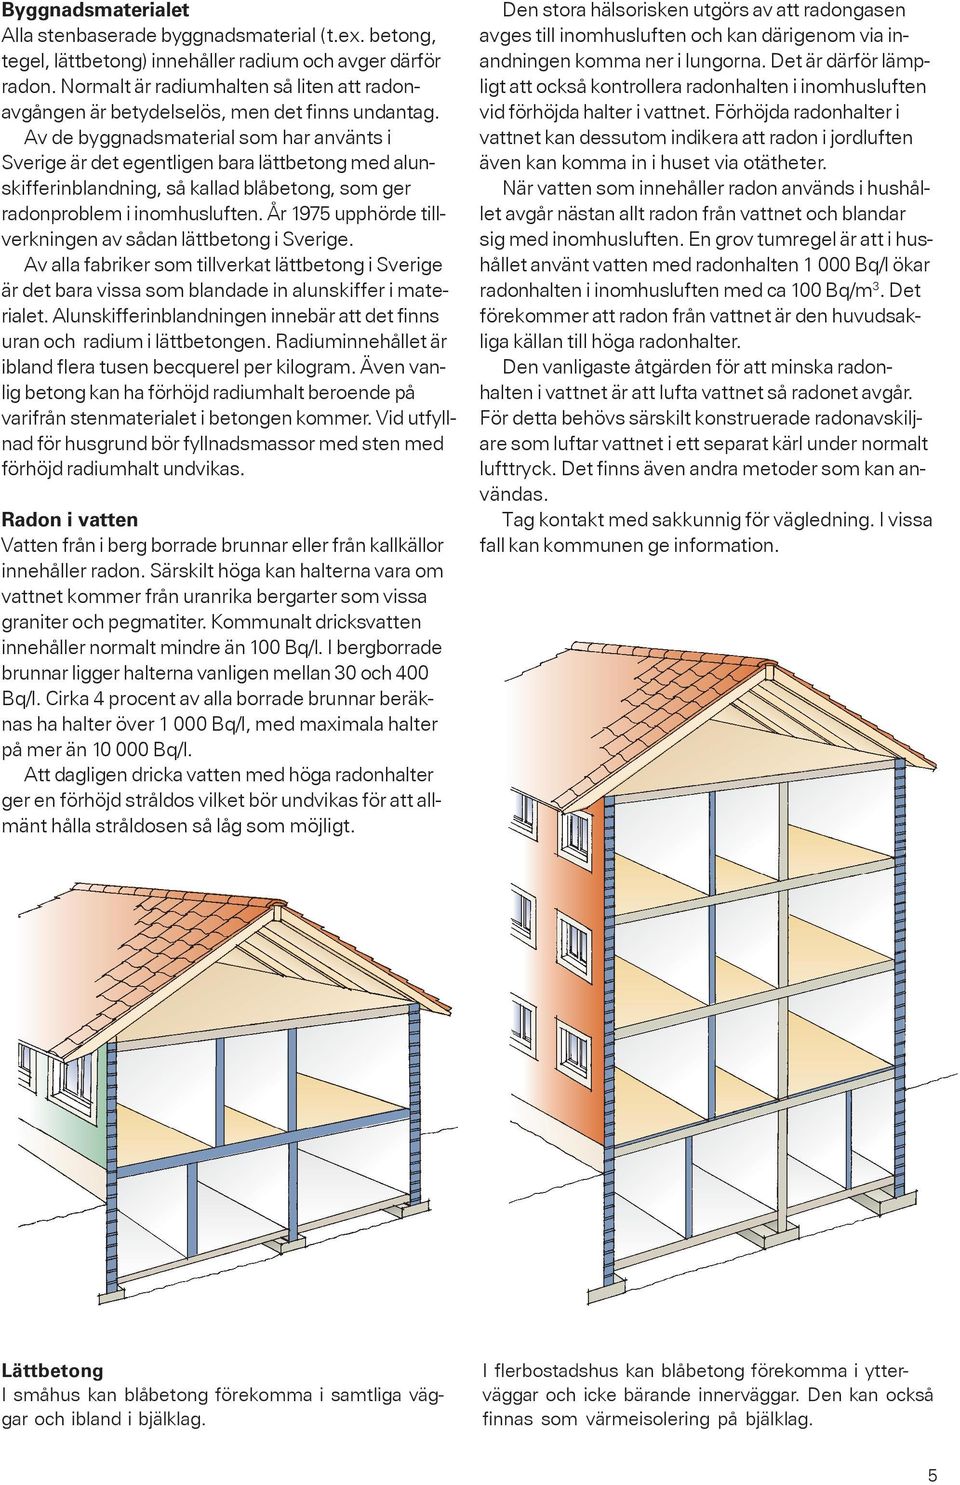 Av de byggnadsmaterial som har använts i Sverige är det egentligen bara lättbetong med alunskifferinblandning, så kallad blåbetong, som ger radonproblem i inomhusluften.